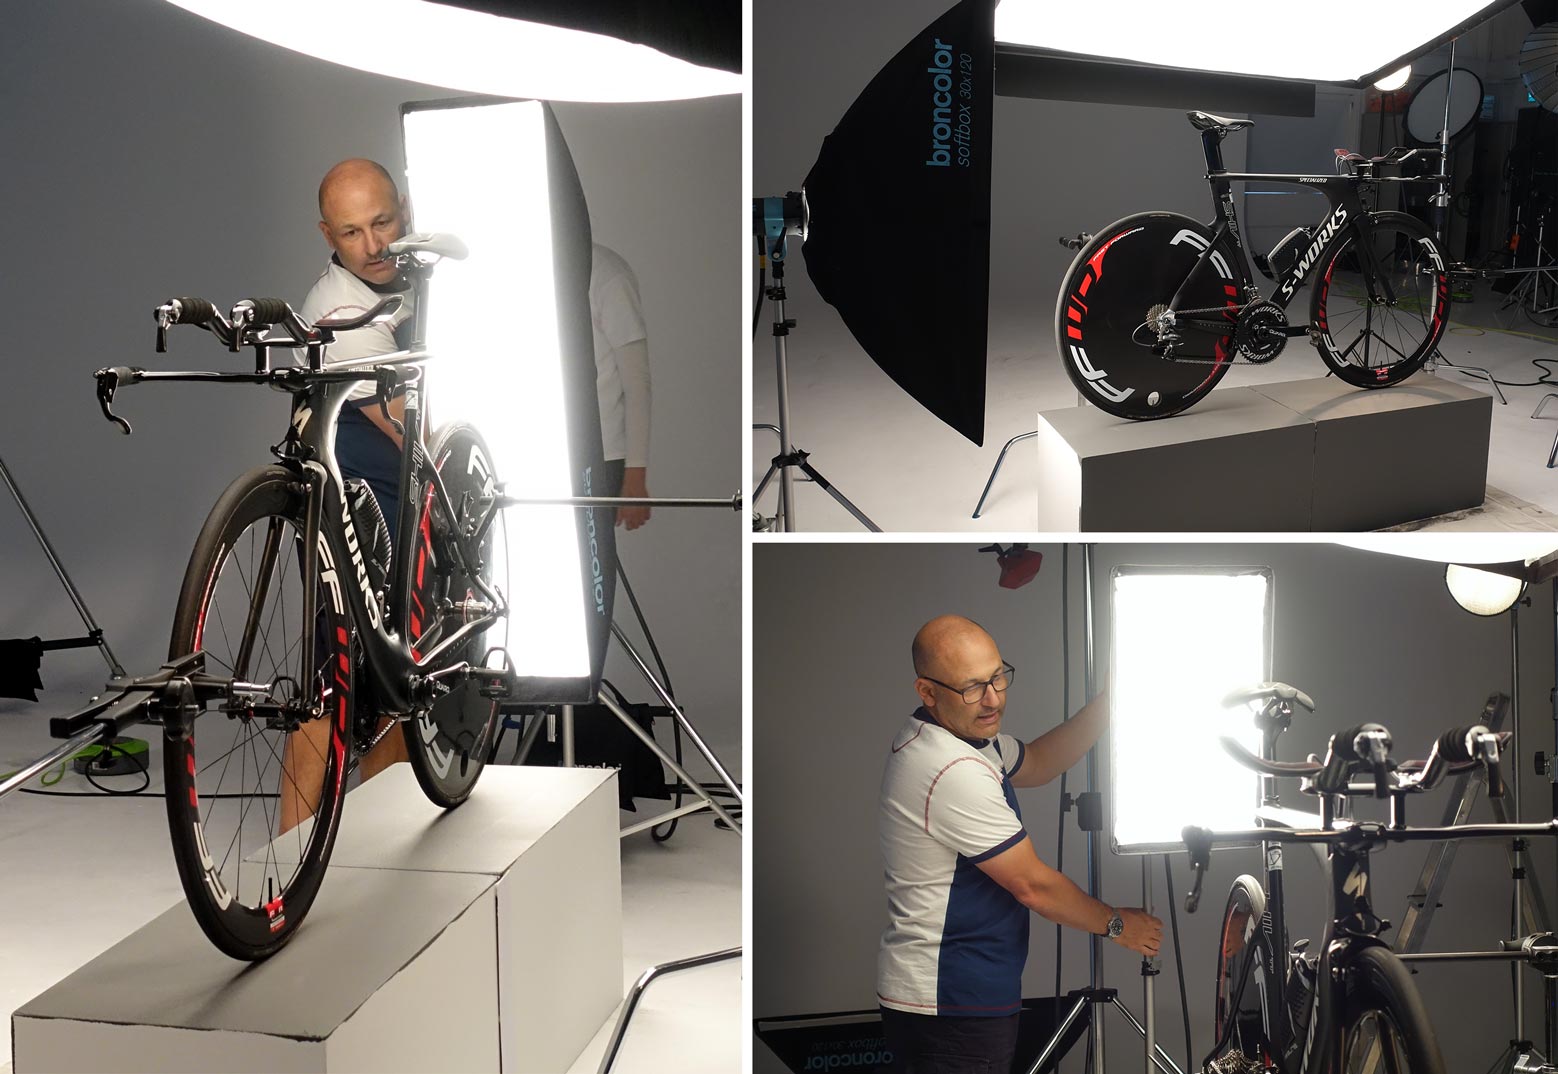 Lighting setup for bicycle product shoot